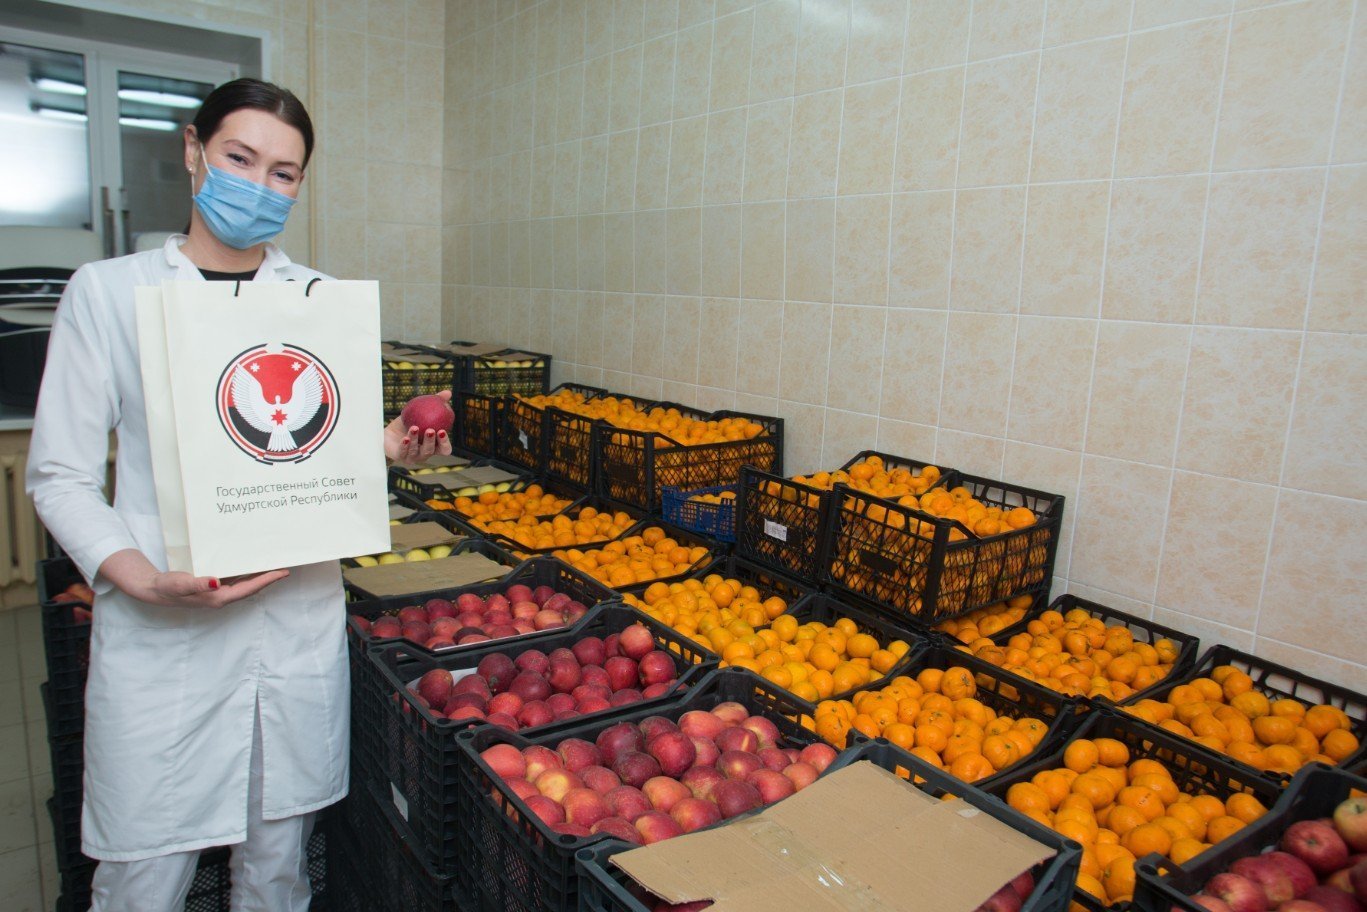 

Медработникам 1 РКБ в Удмуртии подарили более 2 тонн фруктов

